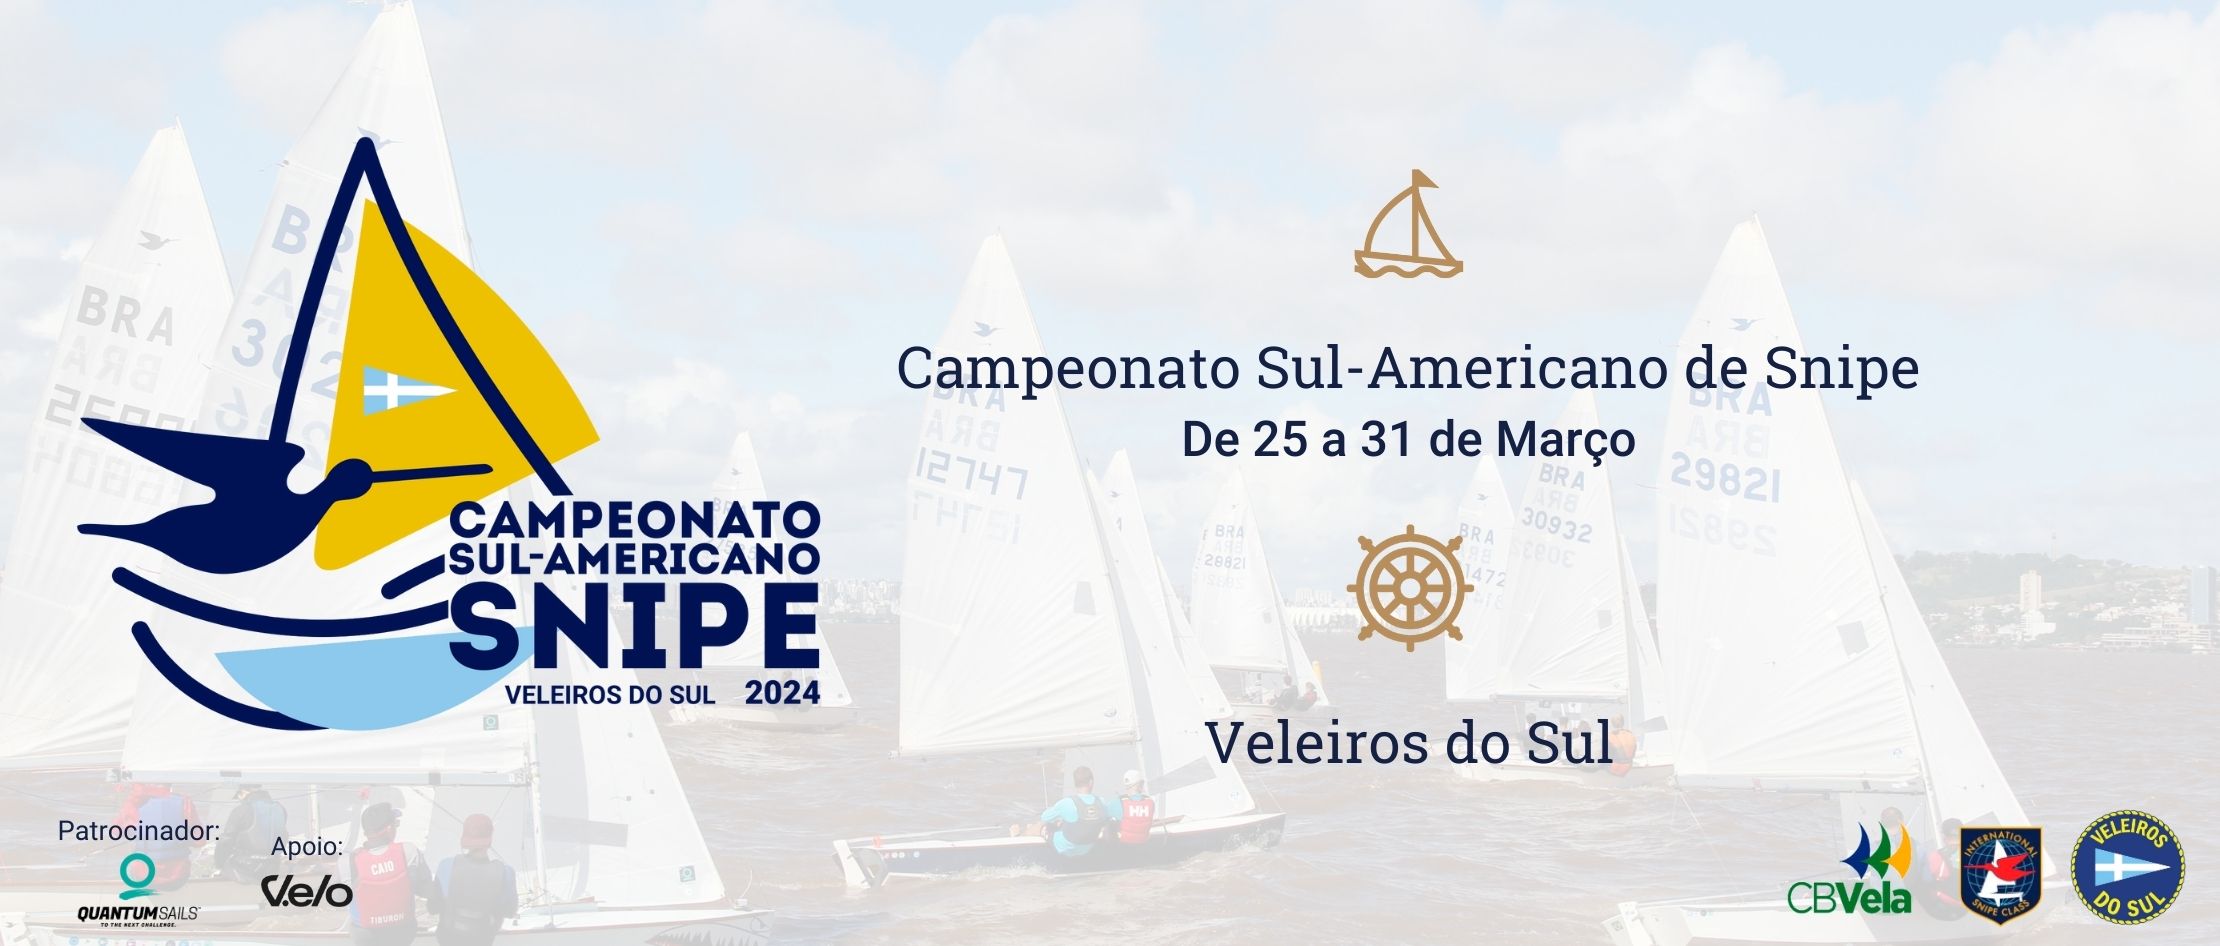 Campeonato Sul-Americano de Snipe 2024: Prazo de inscrições com desconto prorrogado! 